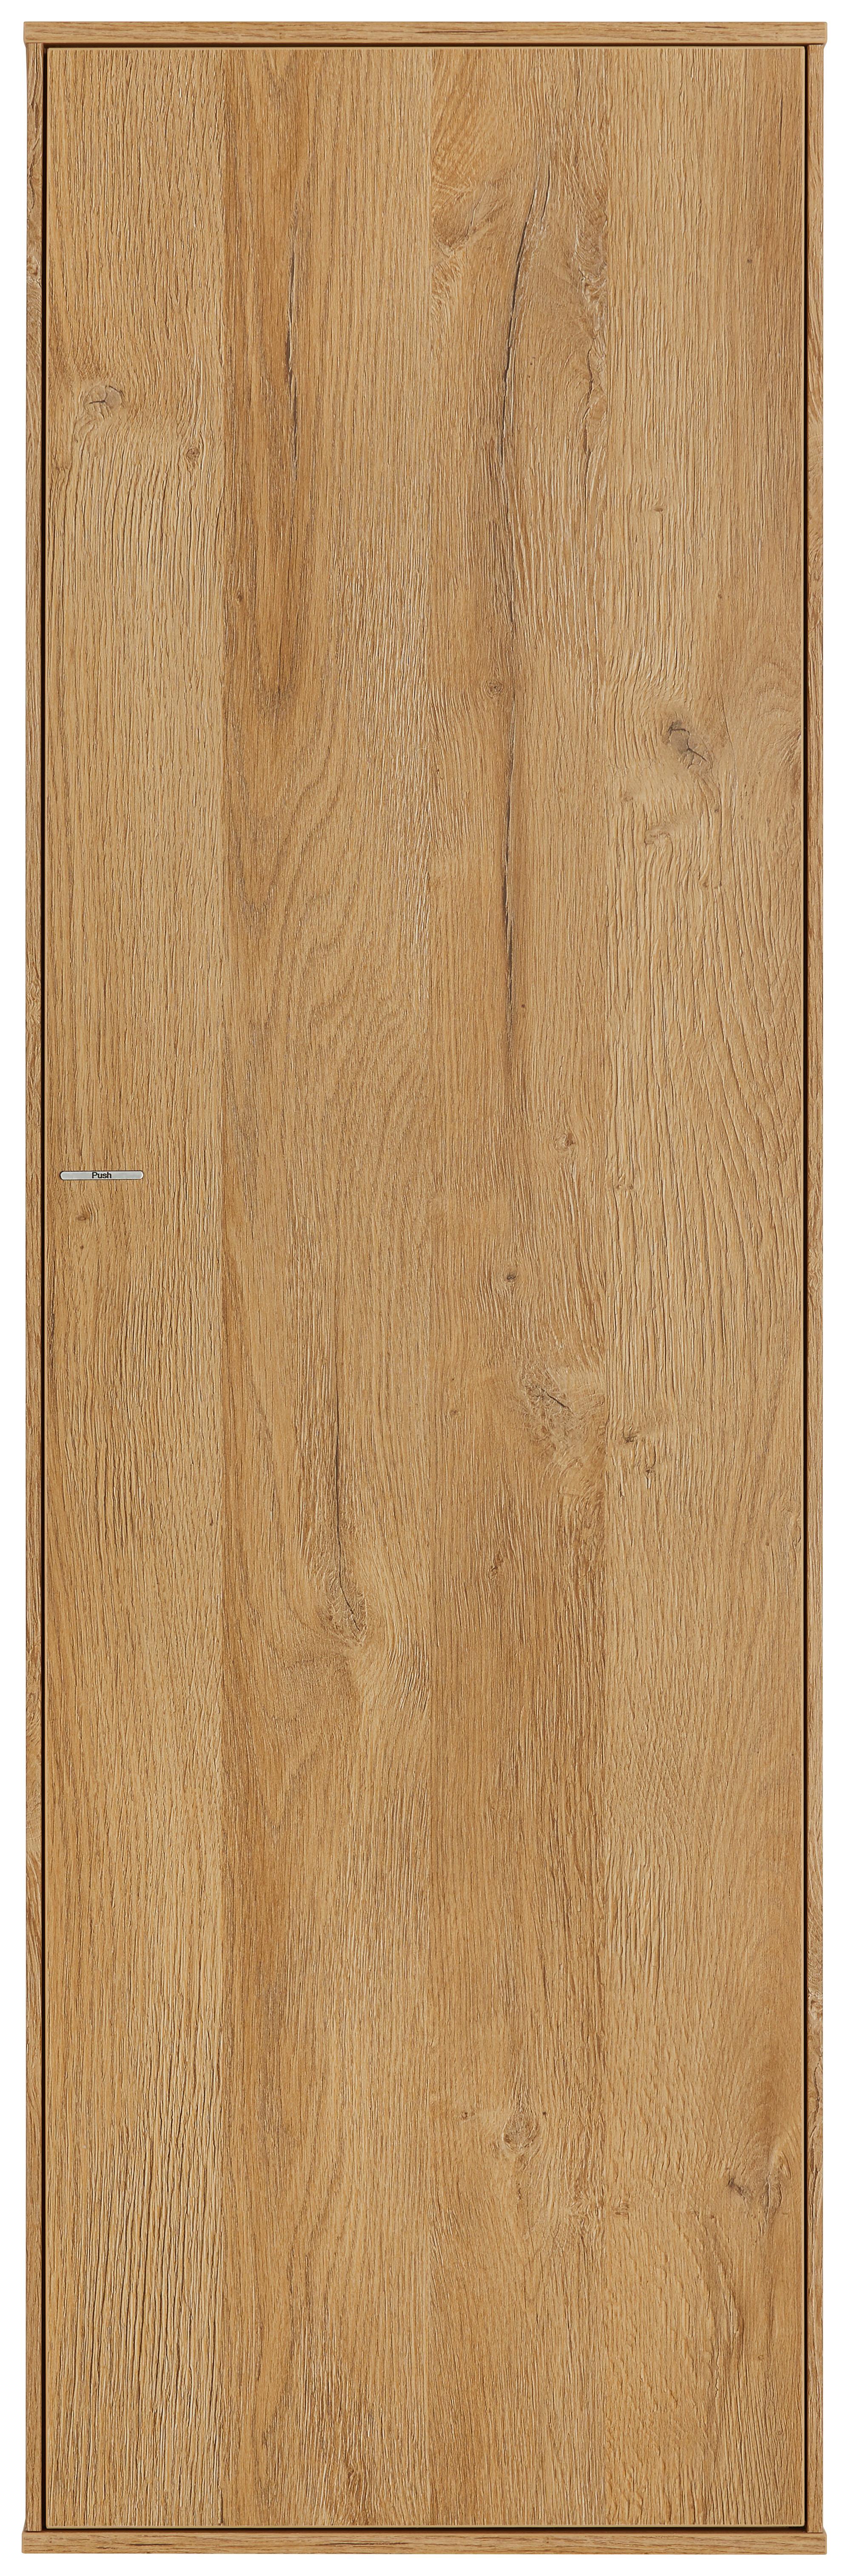 Závesný Diel Max Box - farby duba, Moderný, kompozitné drevo (38/120/32cm) - Premium Living